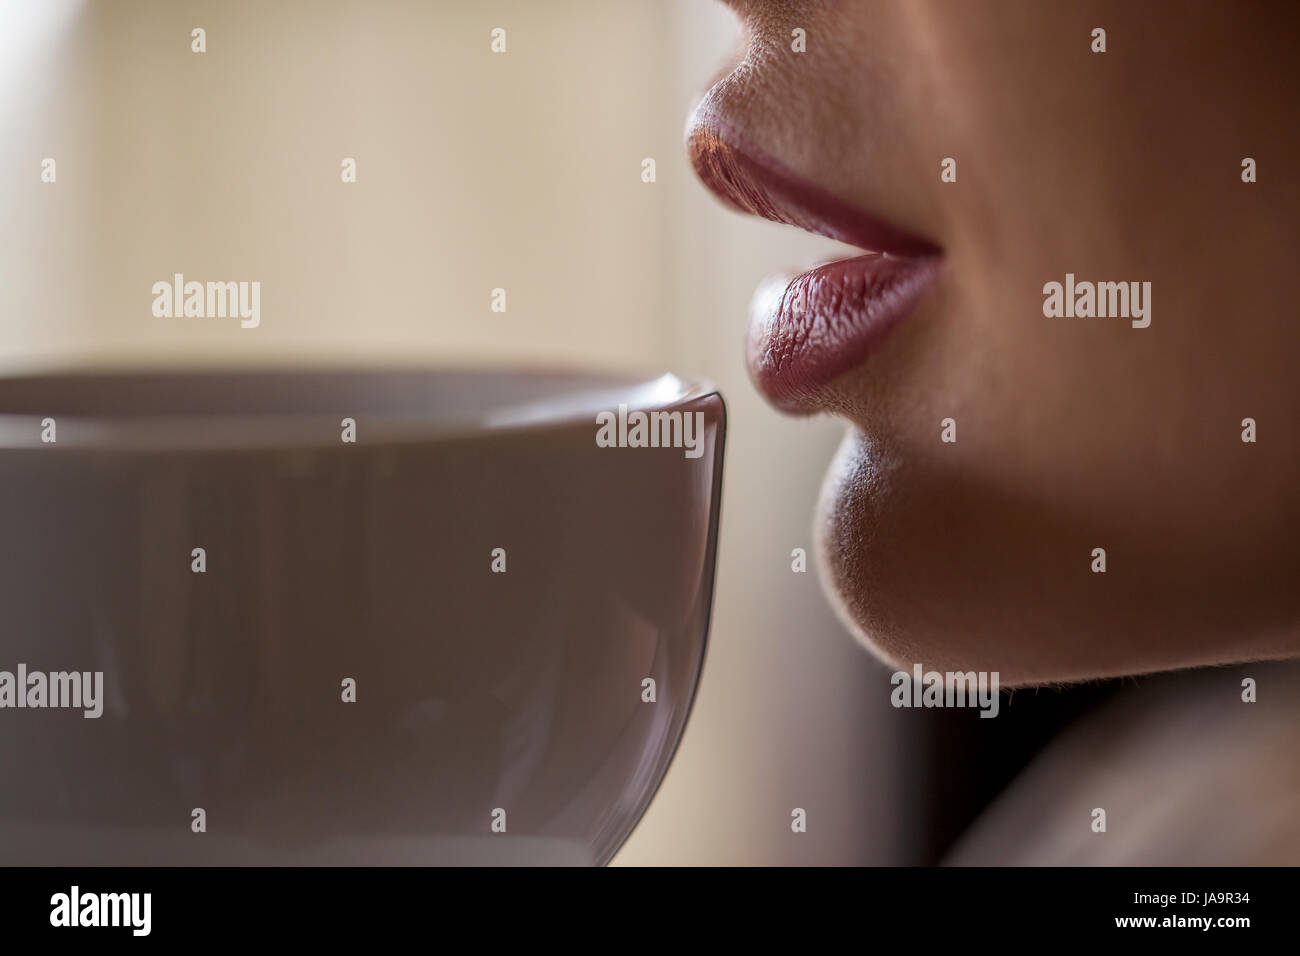 Schuss des Weibes Lippen berühren weiße Tasse Tee oder Kaffee hautnah. Stockfoto